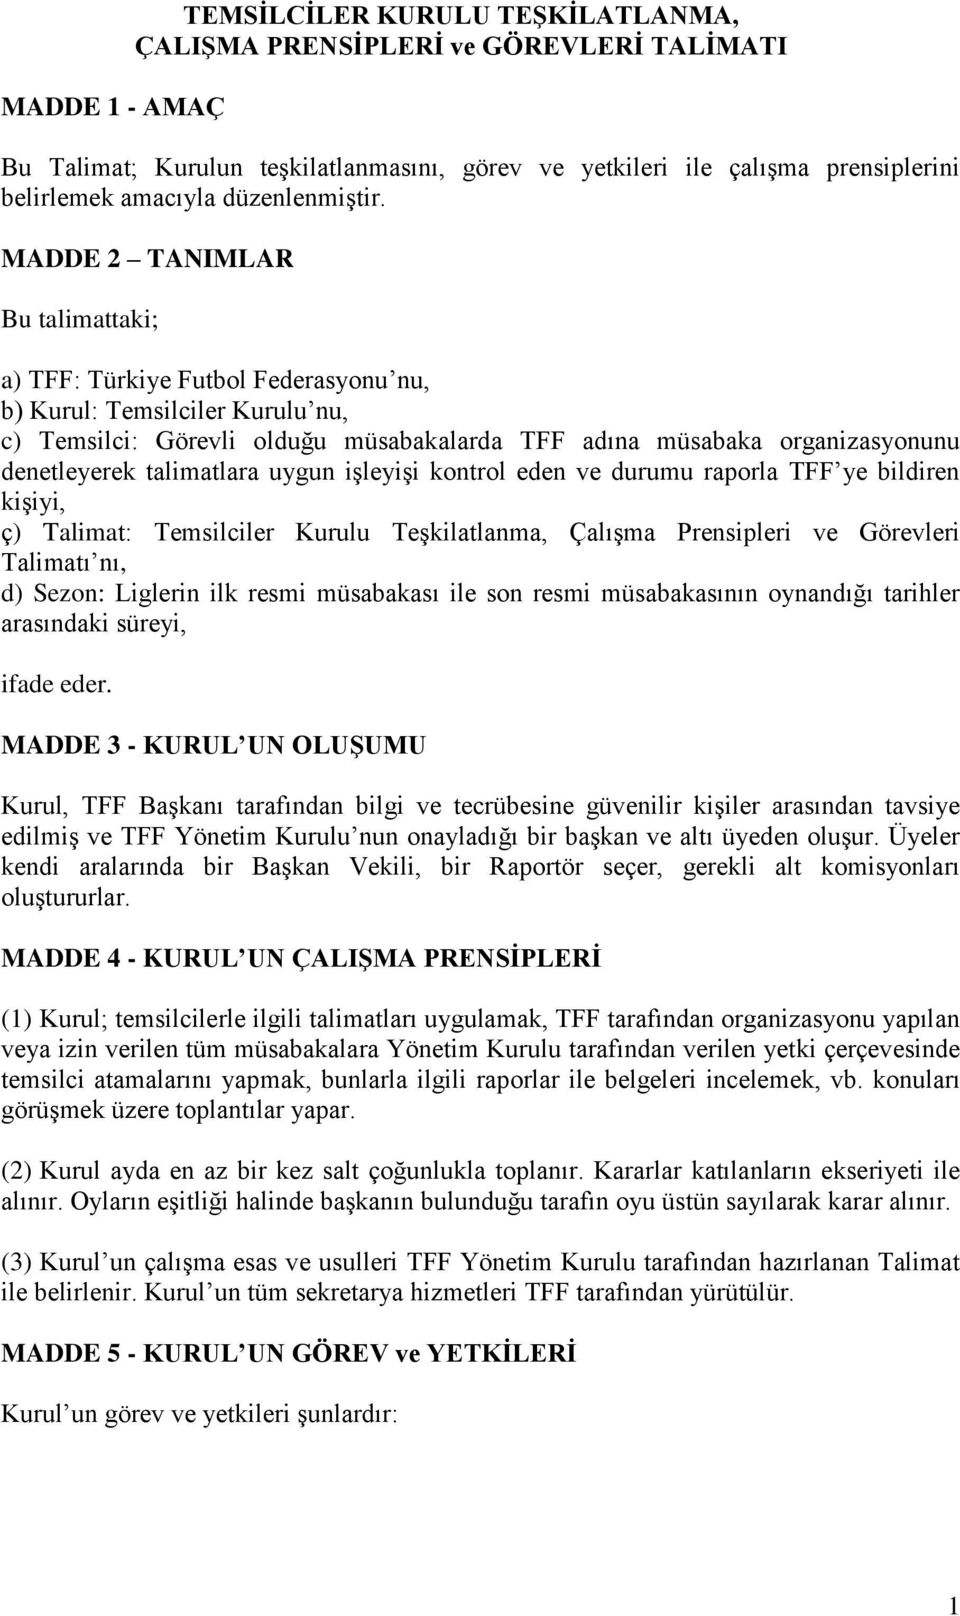 MADDE 2 TANIMLAR Bu talimattaki; a) TFF: Türkiye Futbol Federasyonu nu, b) Kurul: Temsilciler Kurulu nu, c) Temsilci: Görevli olduğu müsabakalarda TFF adına müsabaka organizasyonunu denetleyerek